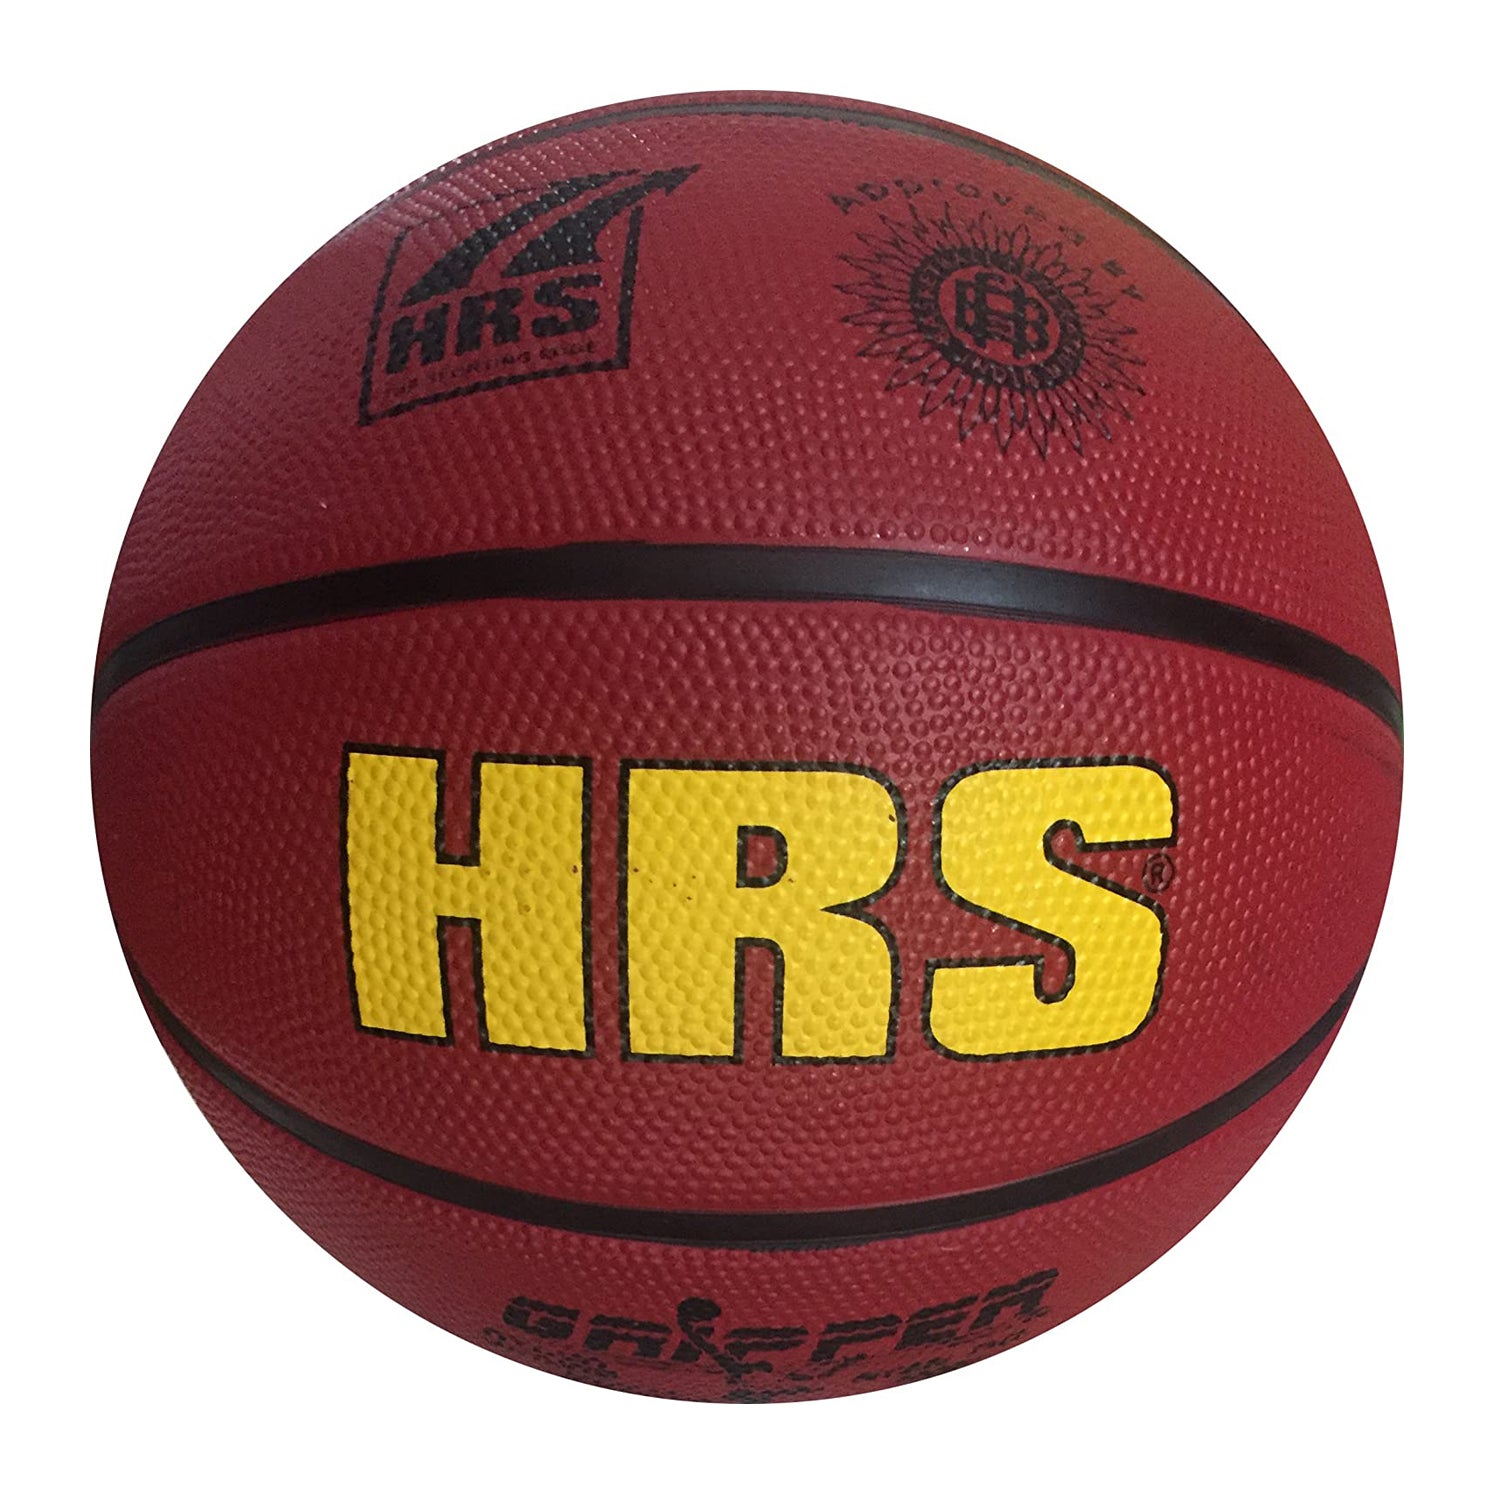 HRS Gripper High Grip Basketball, Size 7 - Best Price online Prokicksports.com